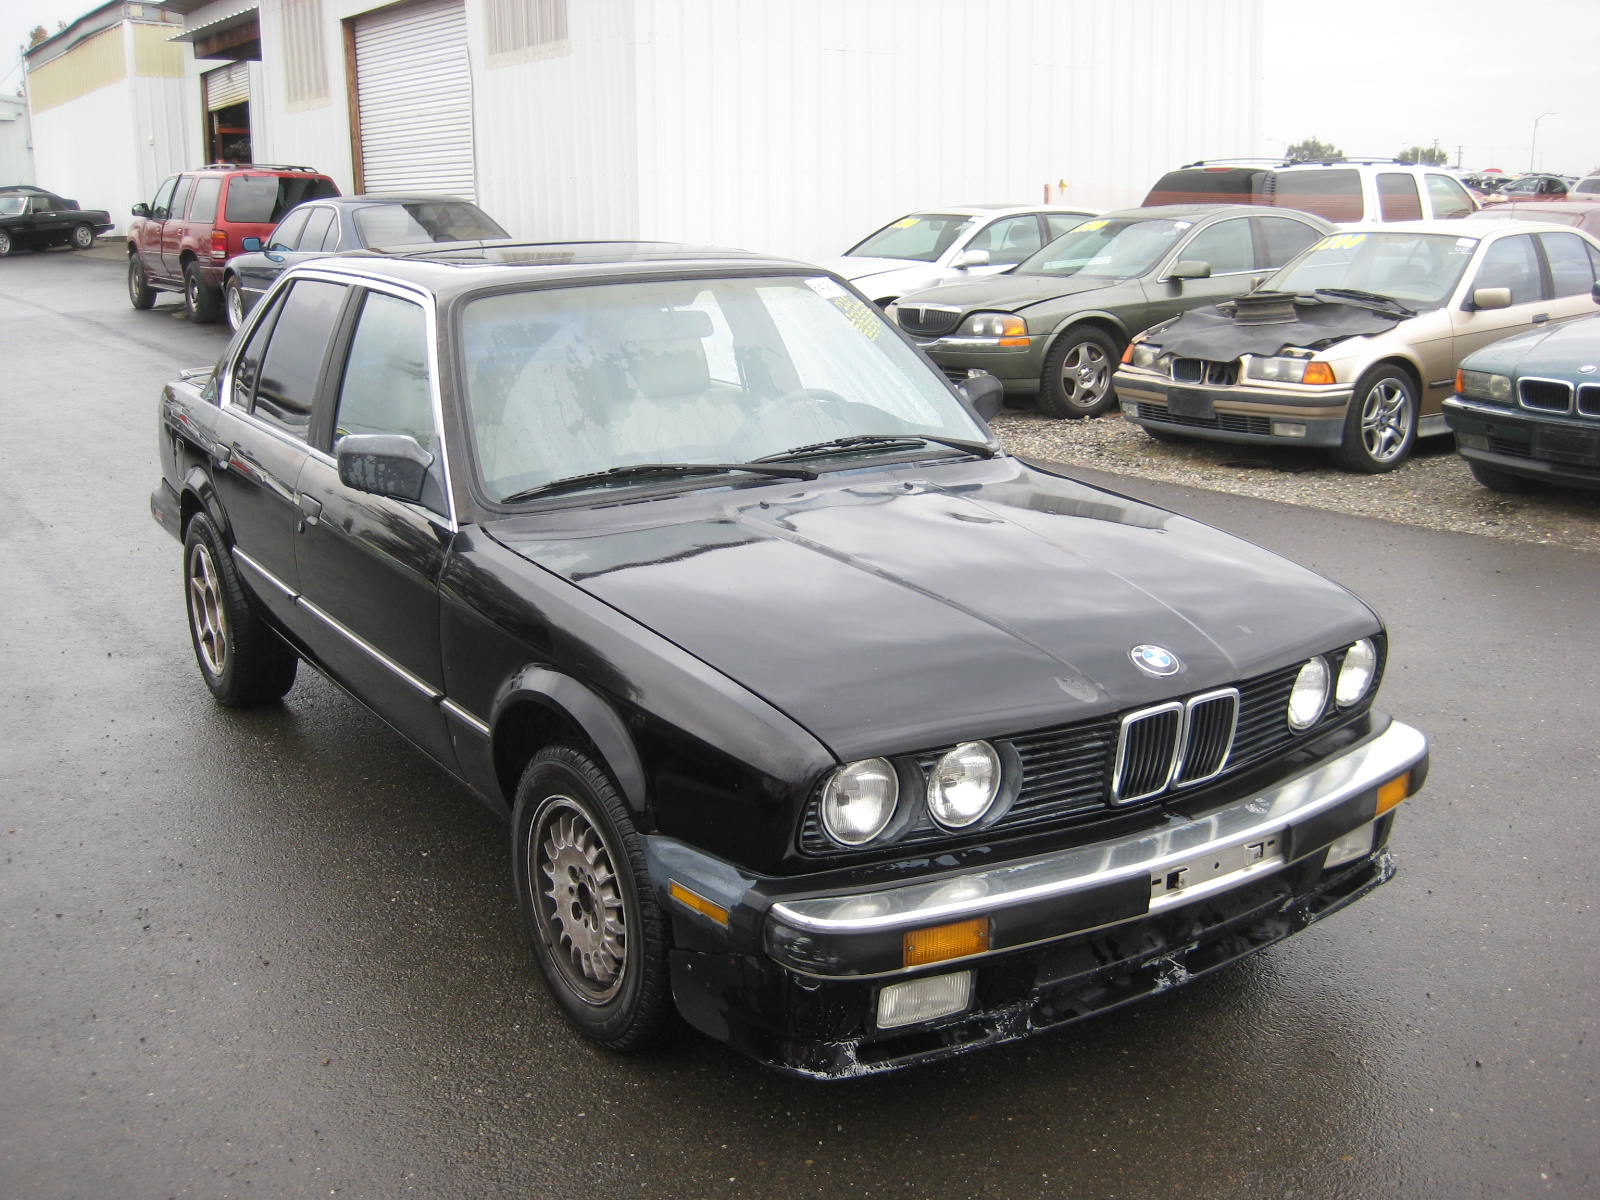 1986 BMW 325e for Sale  Stk#R8420 | AutoGator  Sacramento,CA